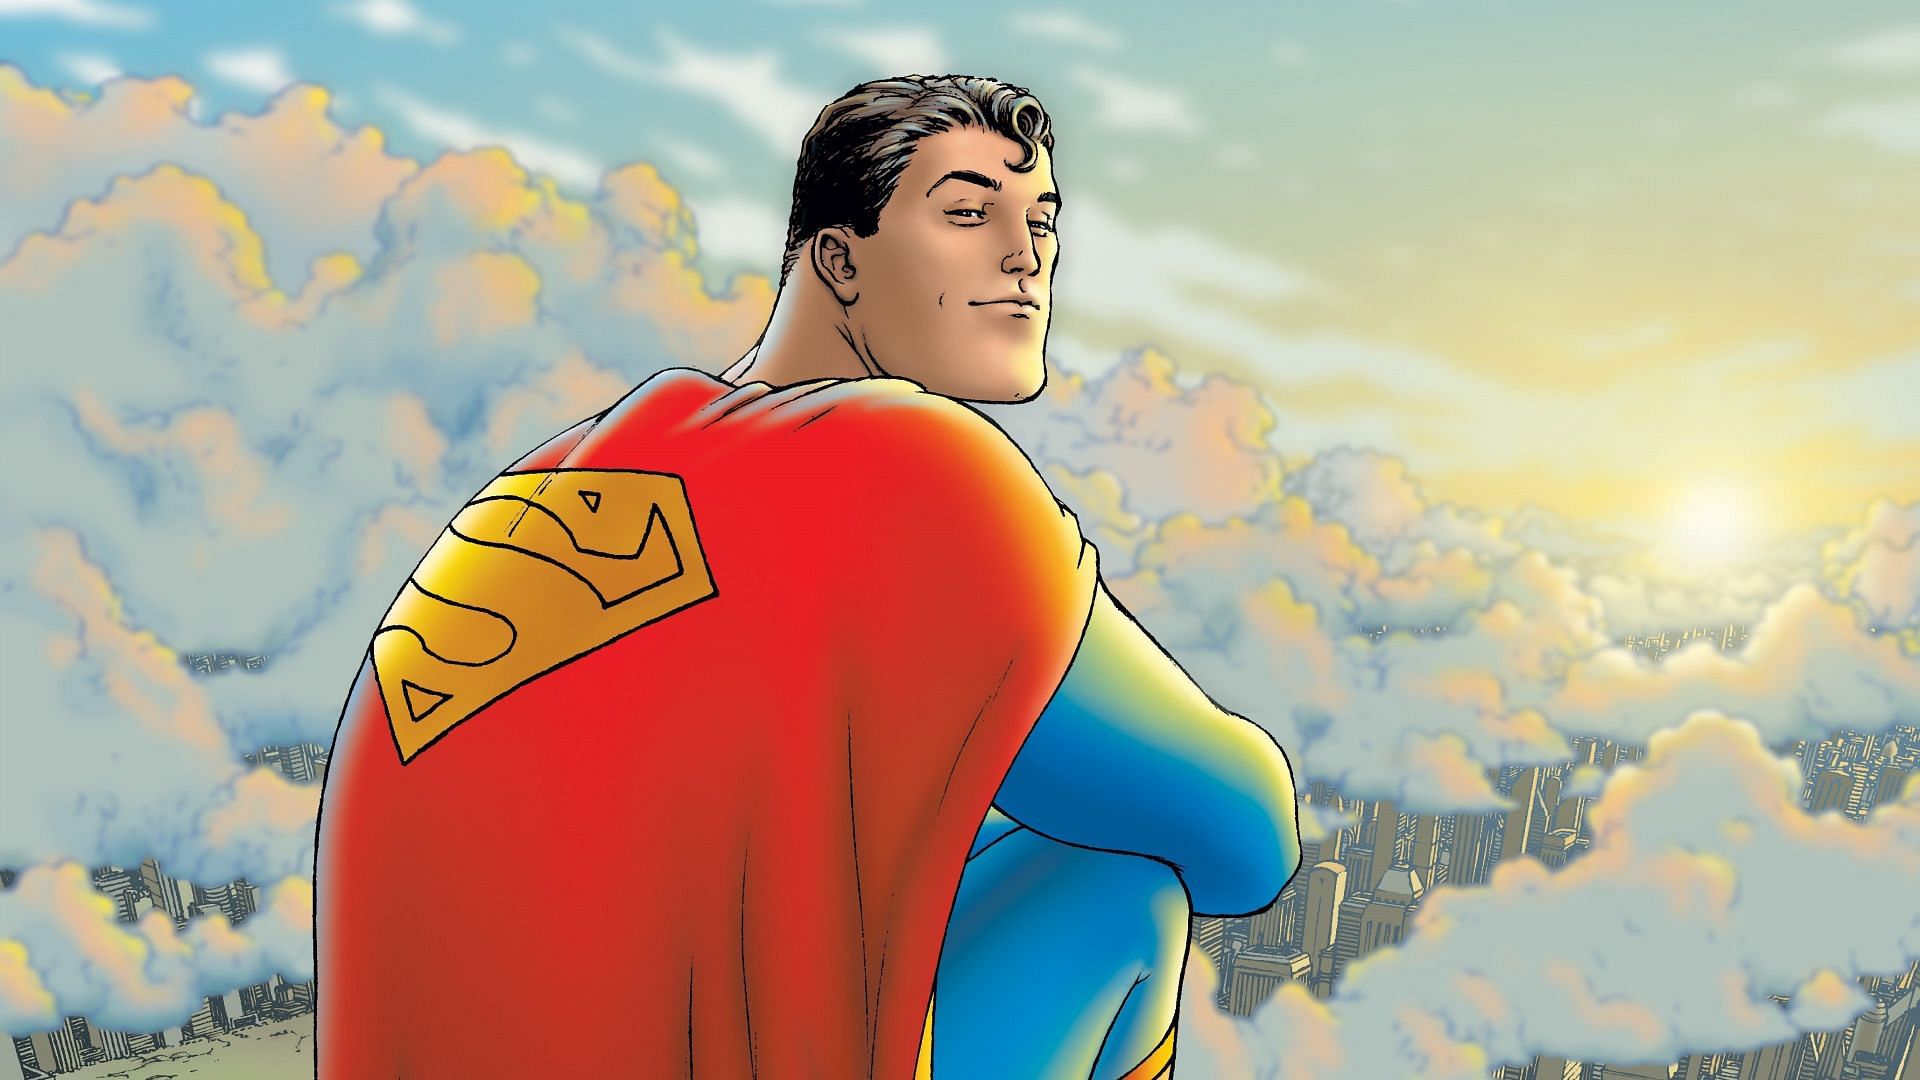 اولین تصویر برای Superman: Legacy بازیگران فیلم را نشان می دهد